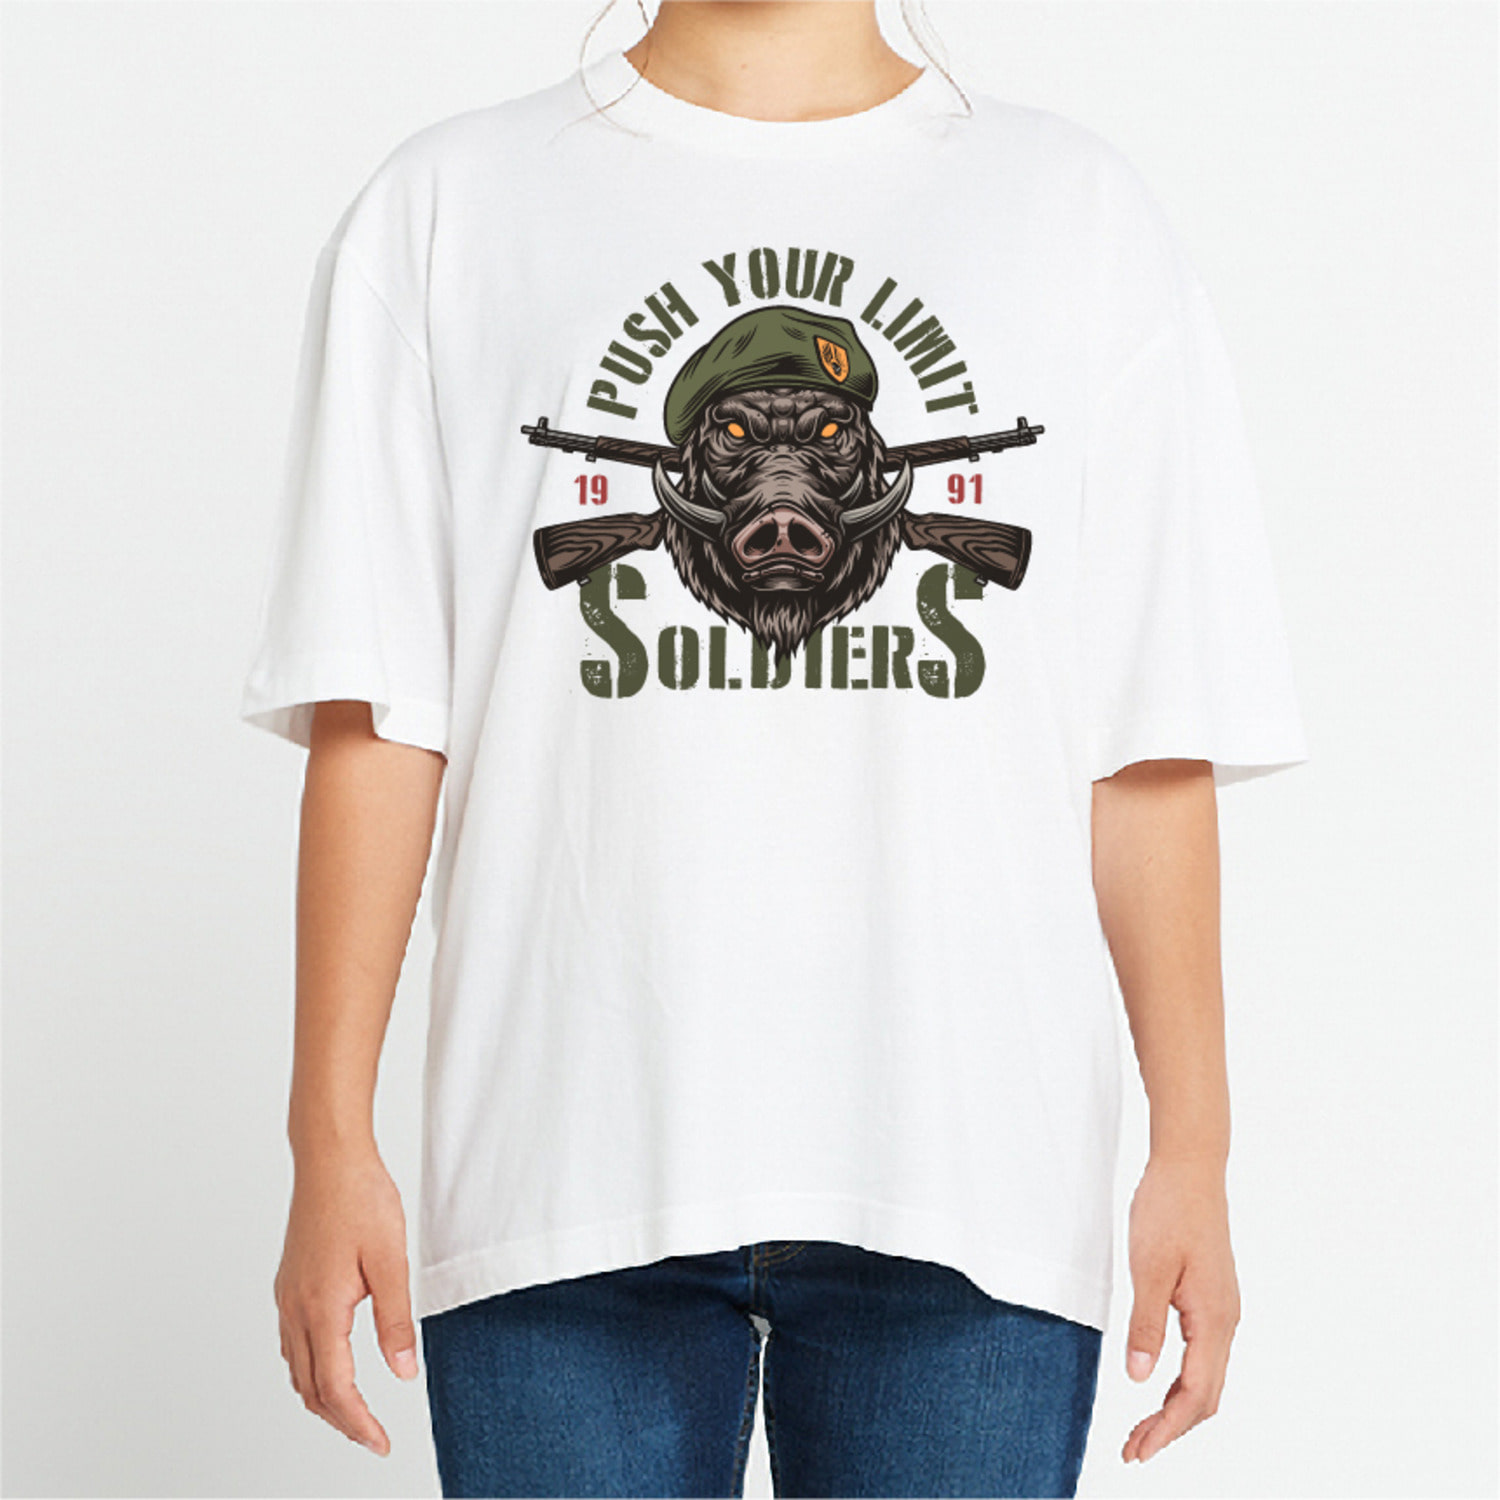 멧돼지 밀리터리 그래픽 오버핏 티셔츠 army.16